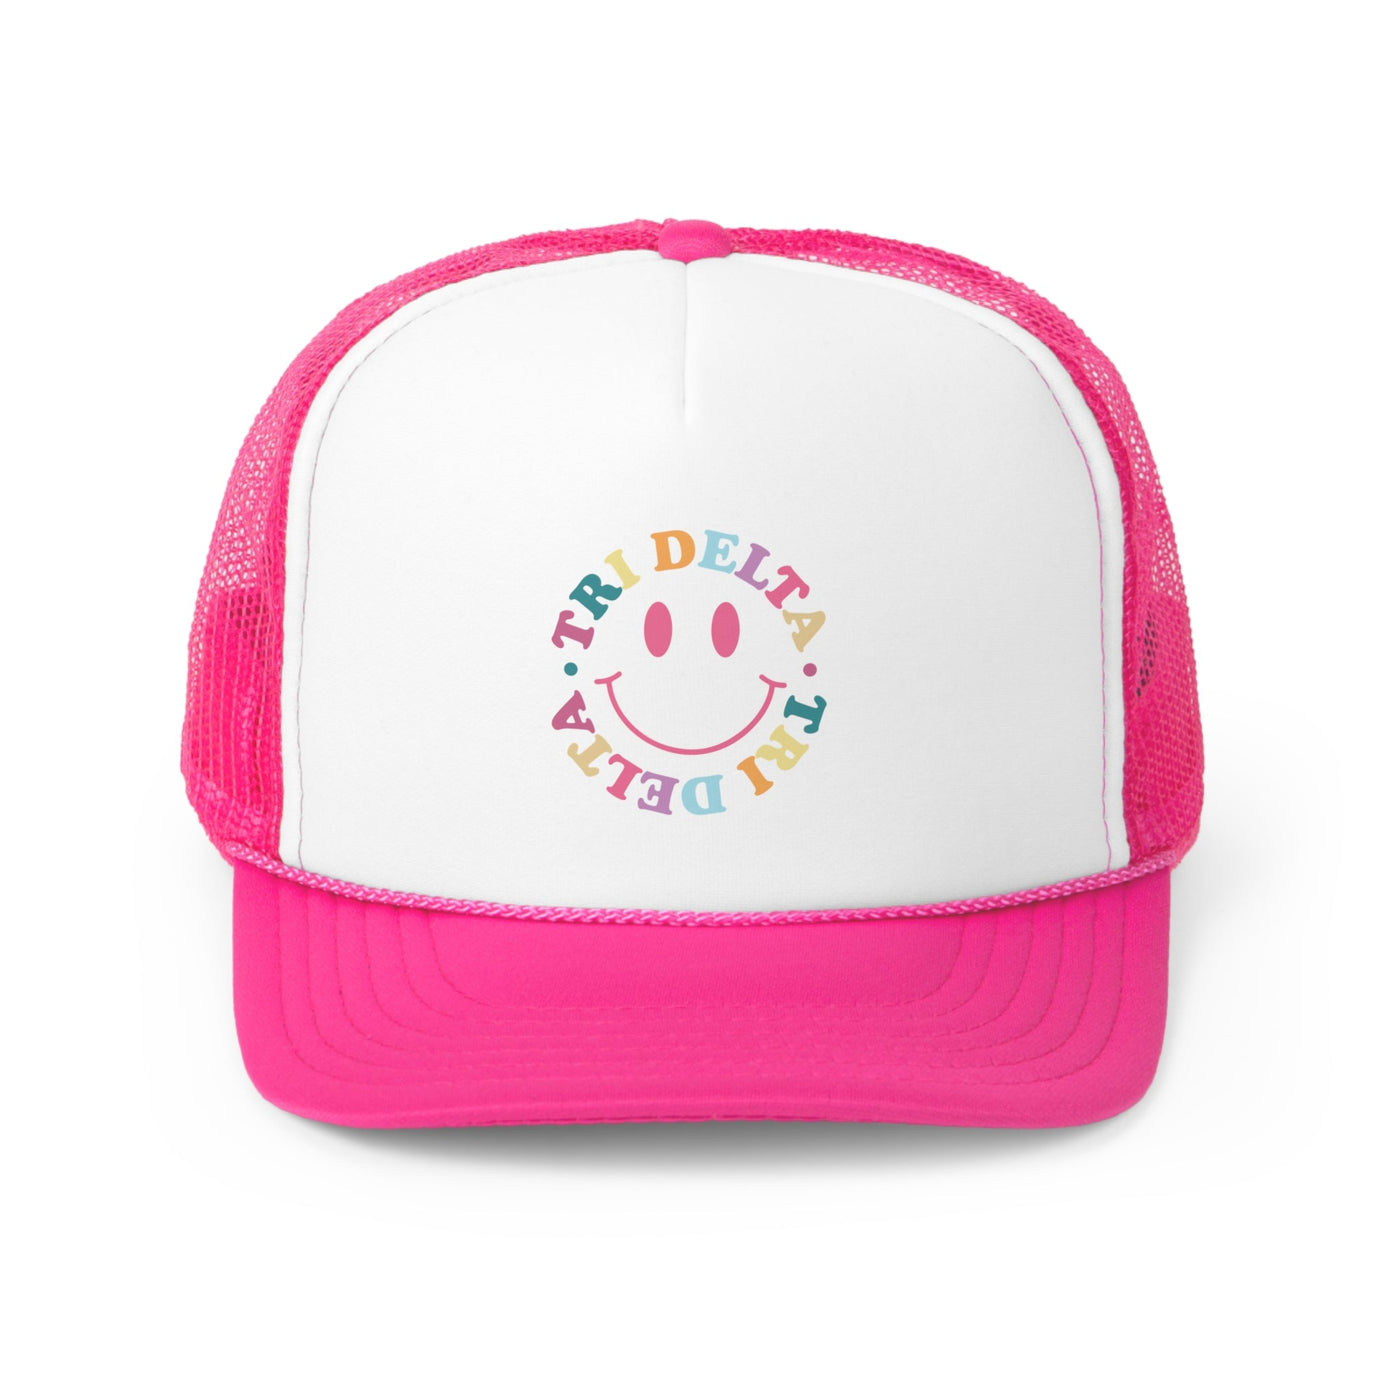 Delta Delta Delta Colorful Smile Foam Trucker Hat